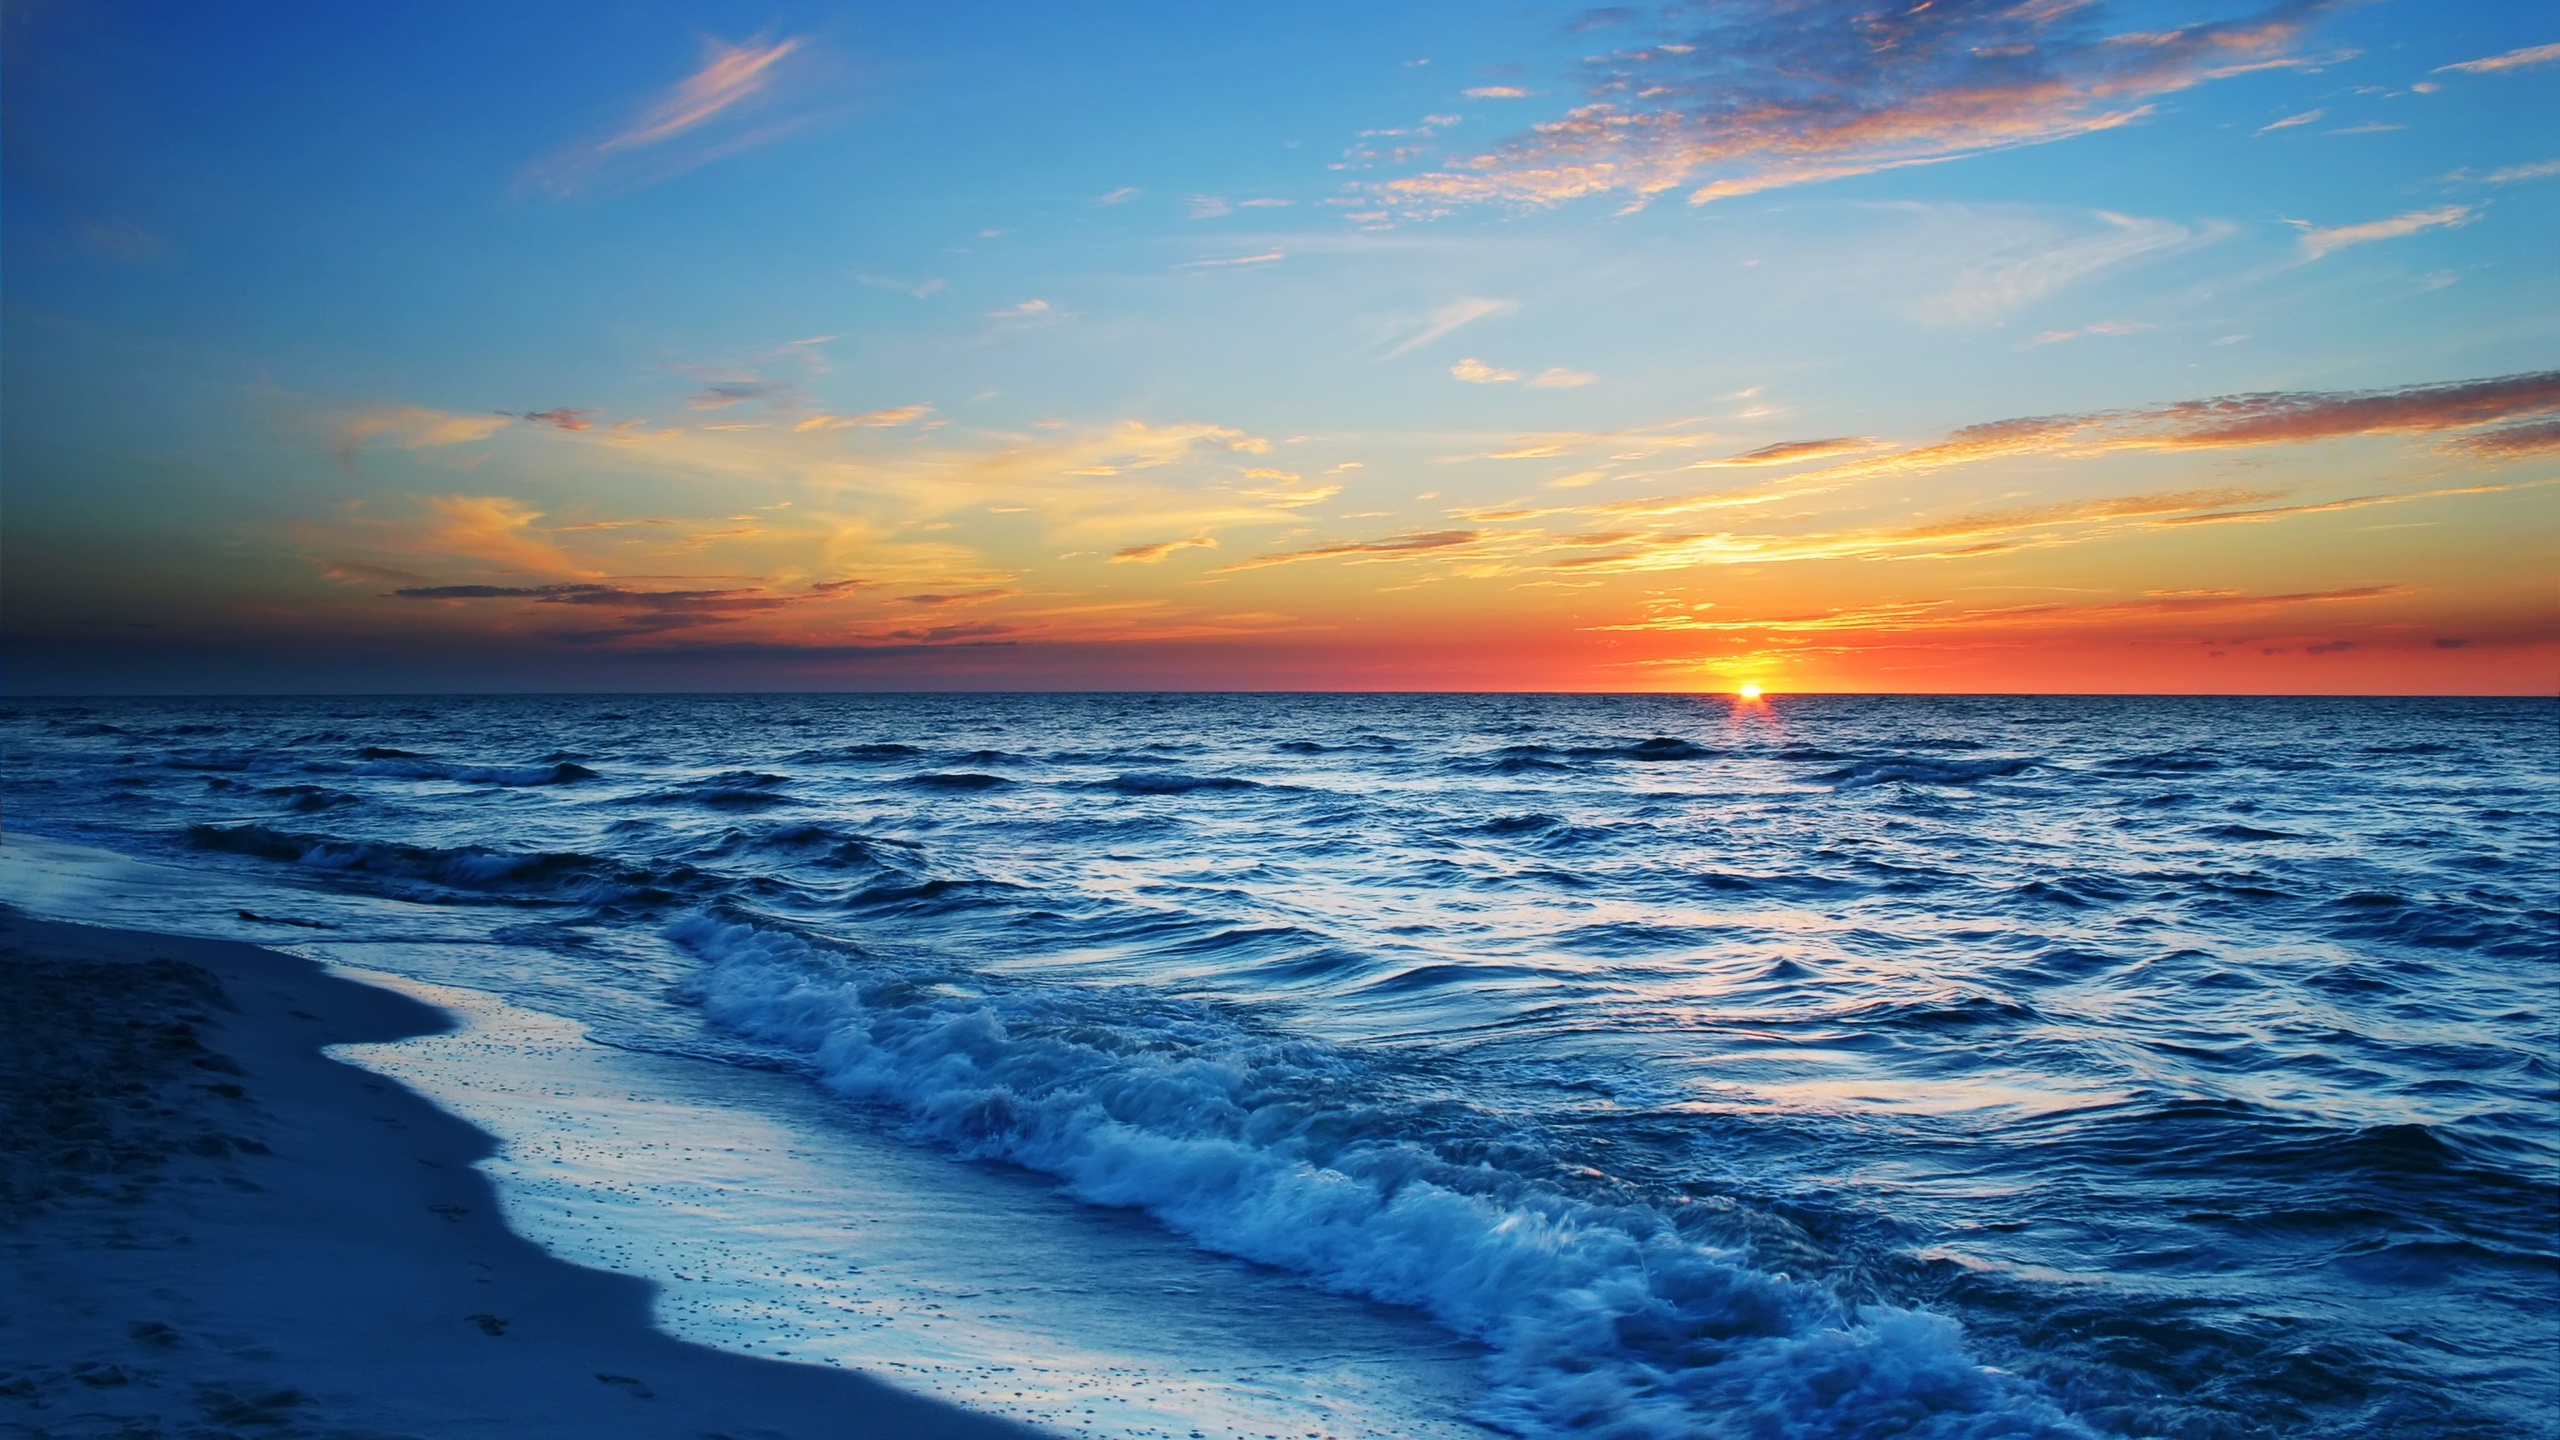 大海, 日落, 岸边, 地平线, 海洋 壁纸 2560x1440 允许